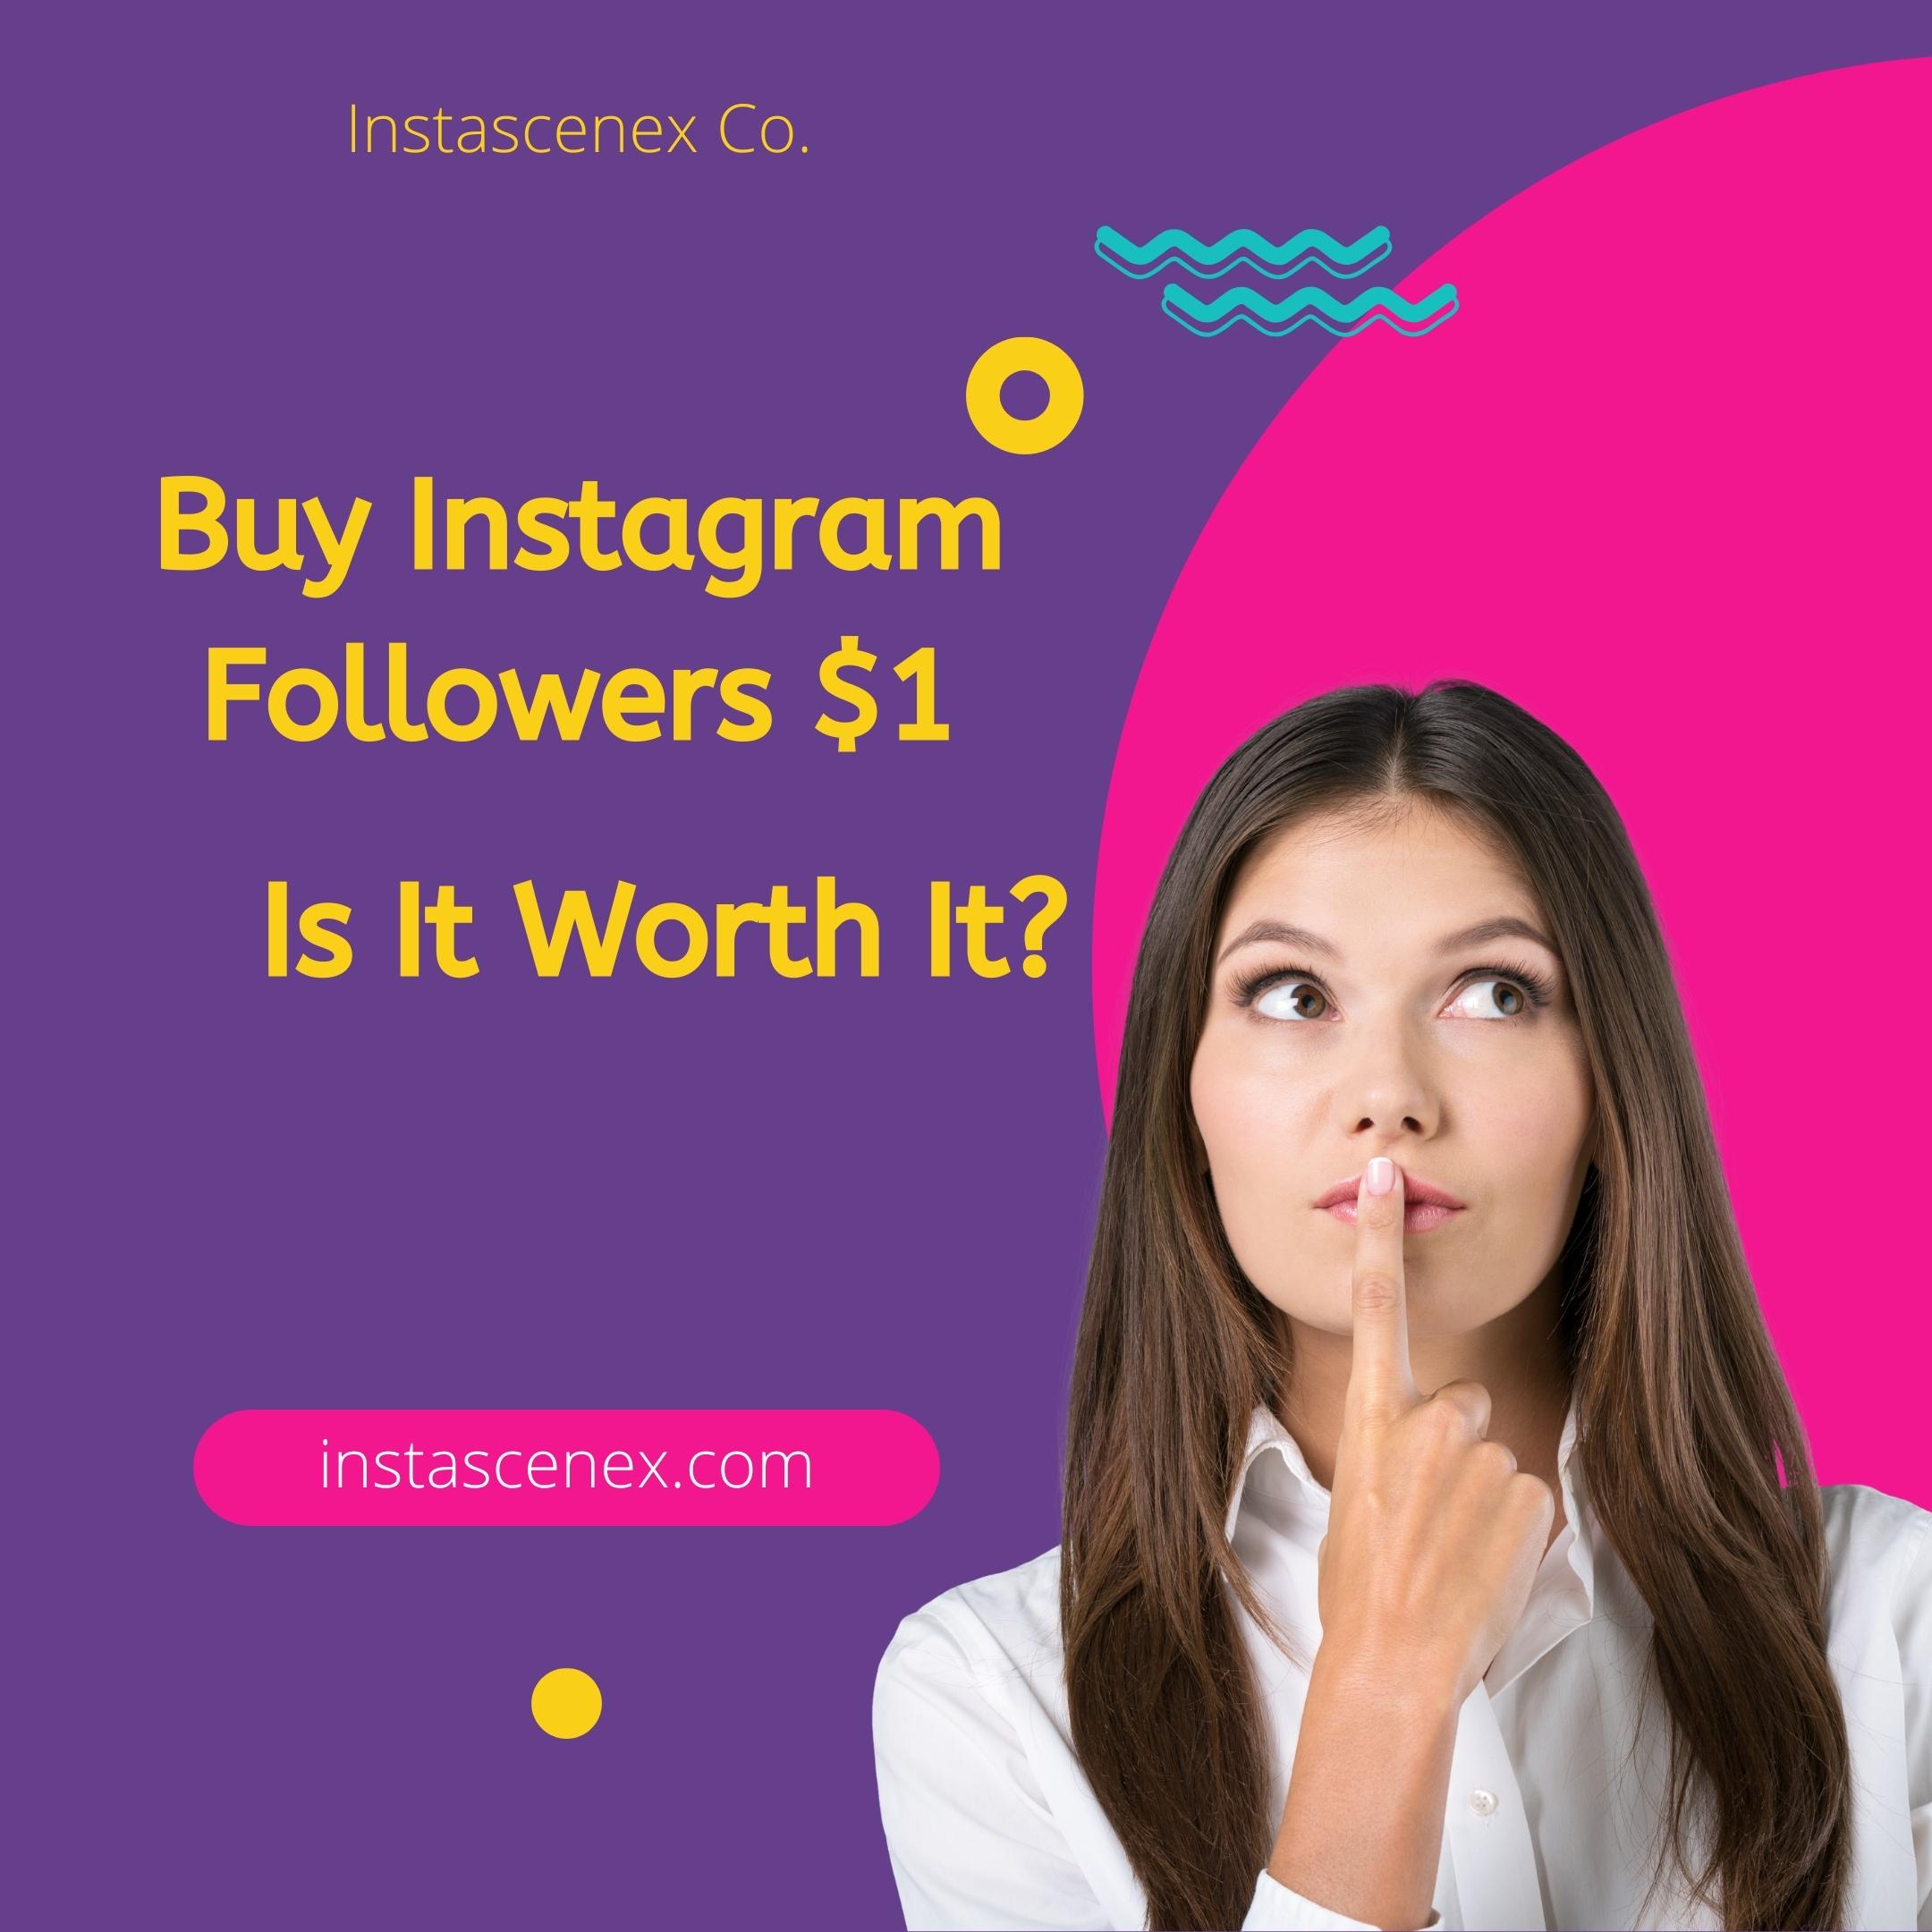 Buy Instagram Followers $1: Is It Worth It?